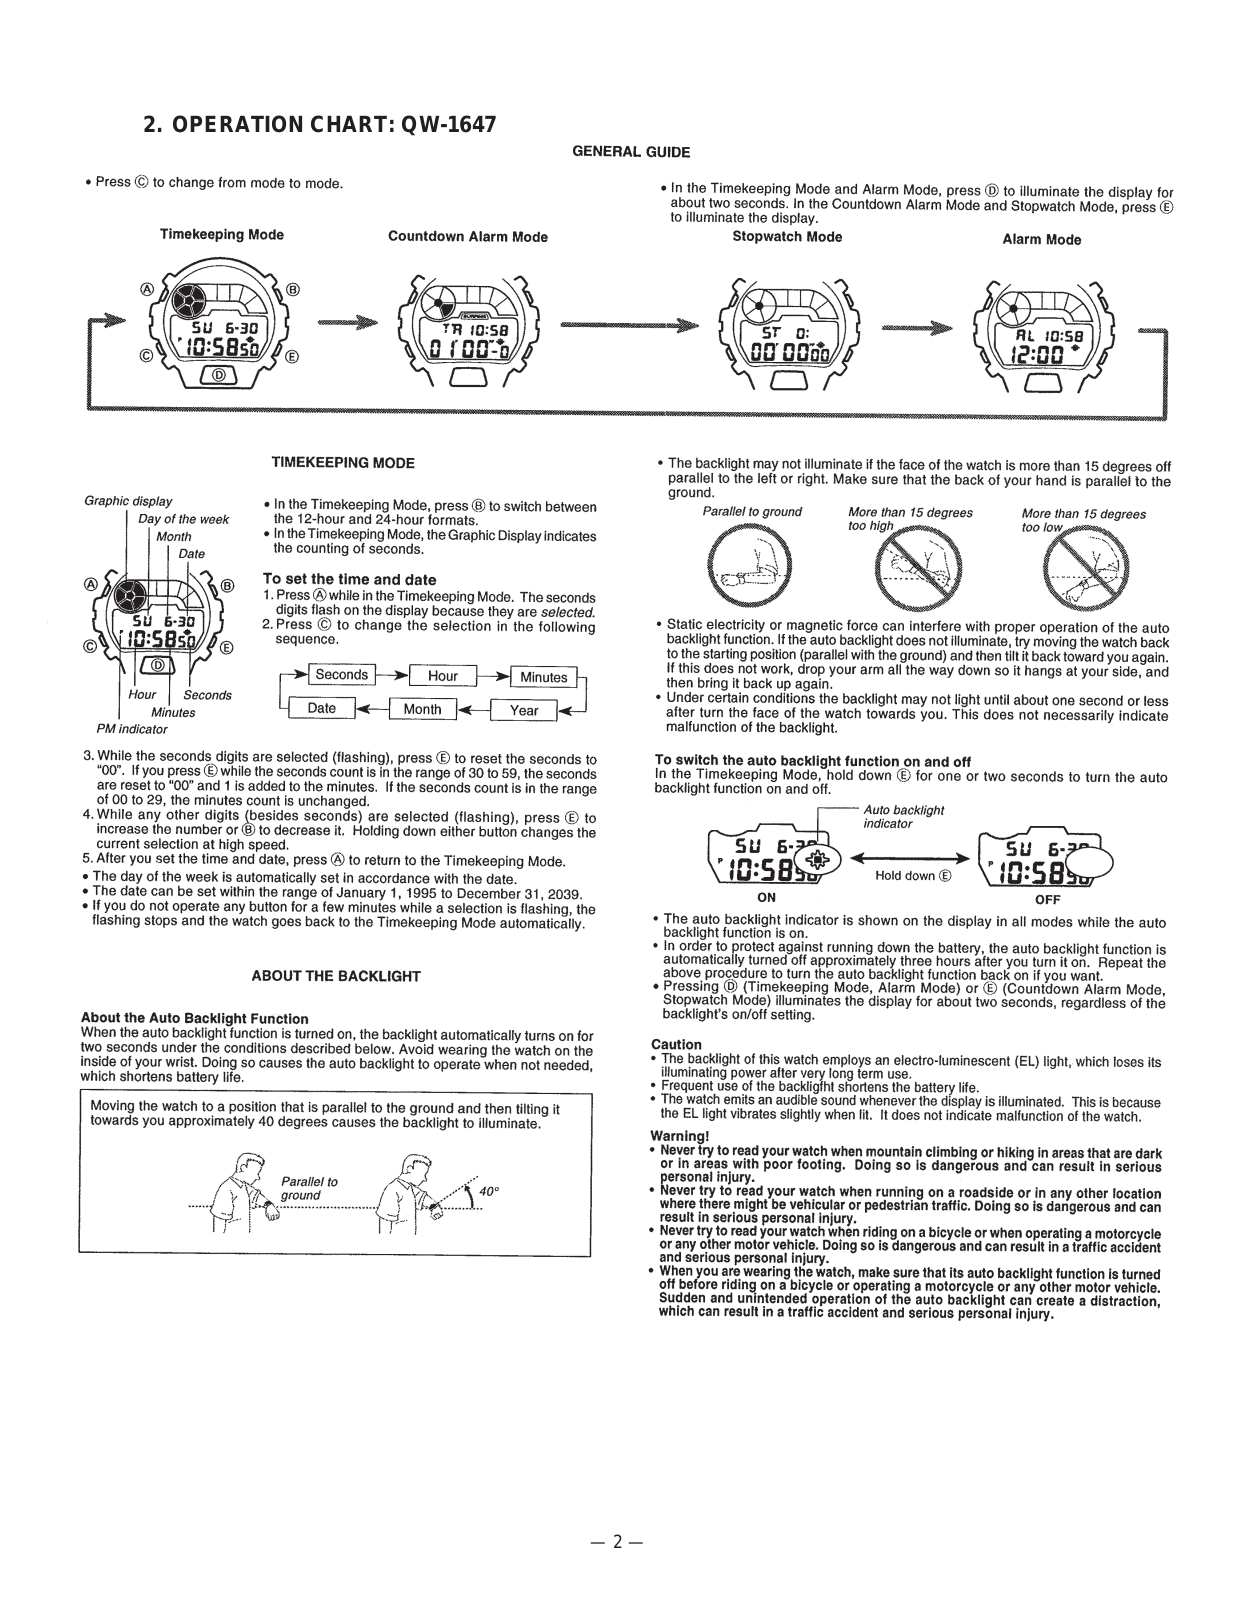 Casio 1647 Owner's Manual